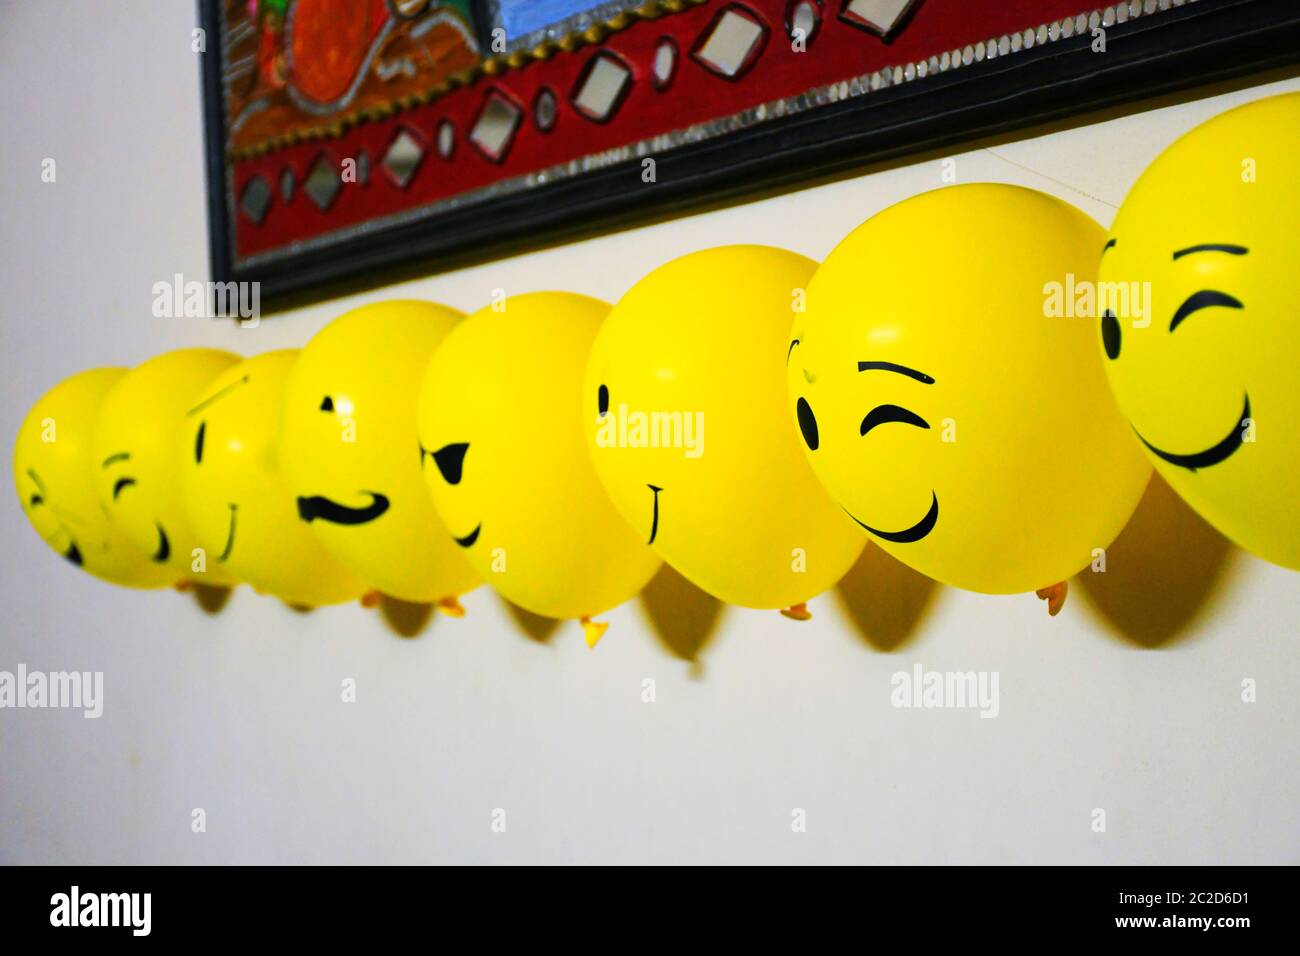 Ballons décoration sur le mur, emoji visages sur les ballons Photo ...